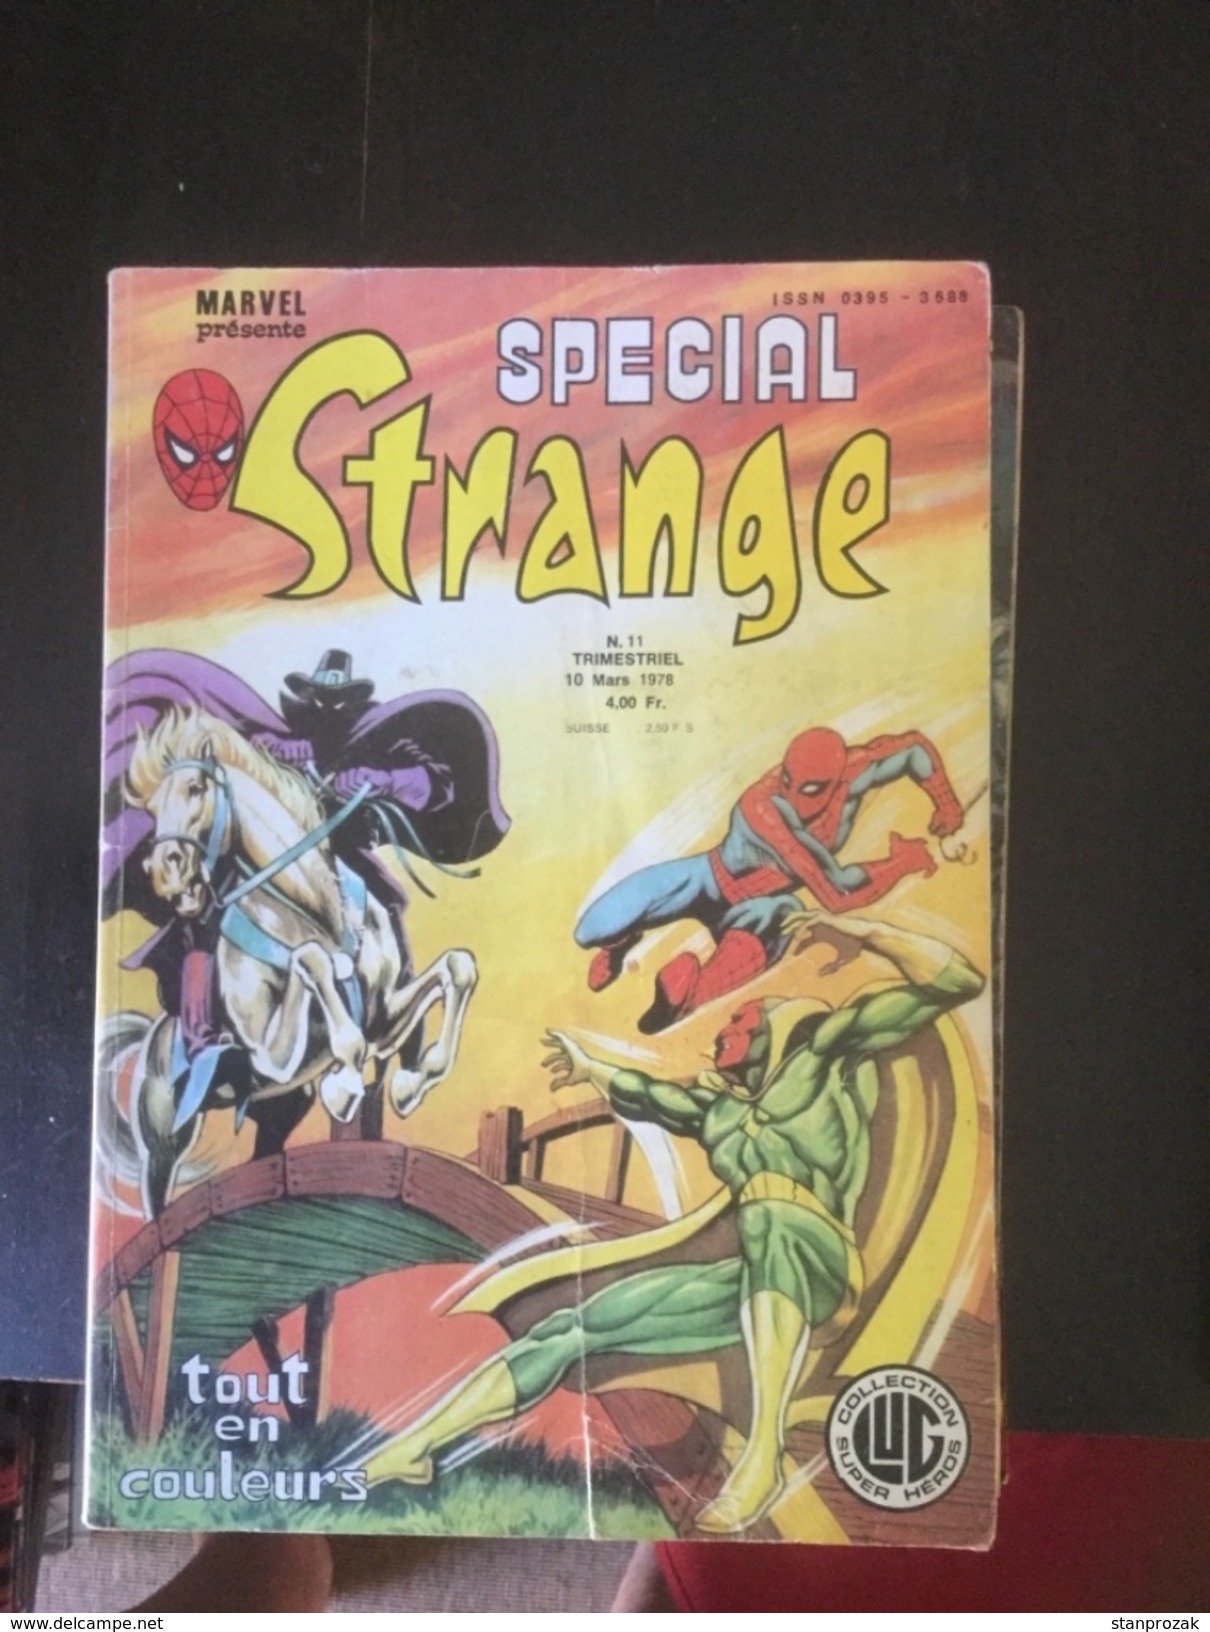 Spécial Strange 11 - Special Strange